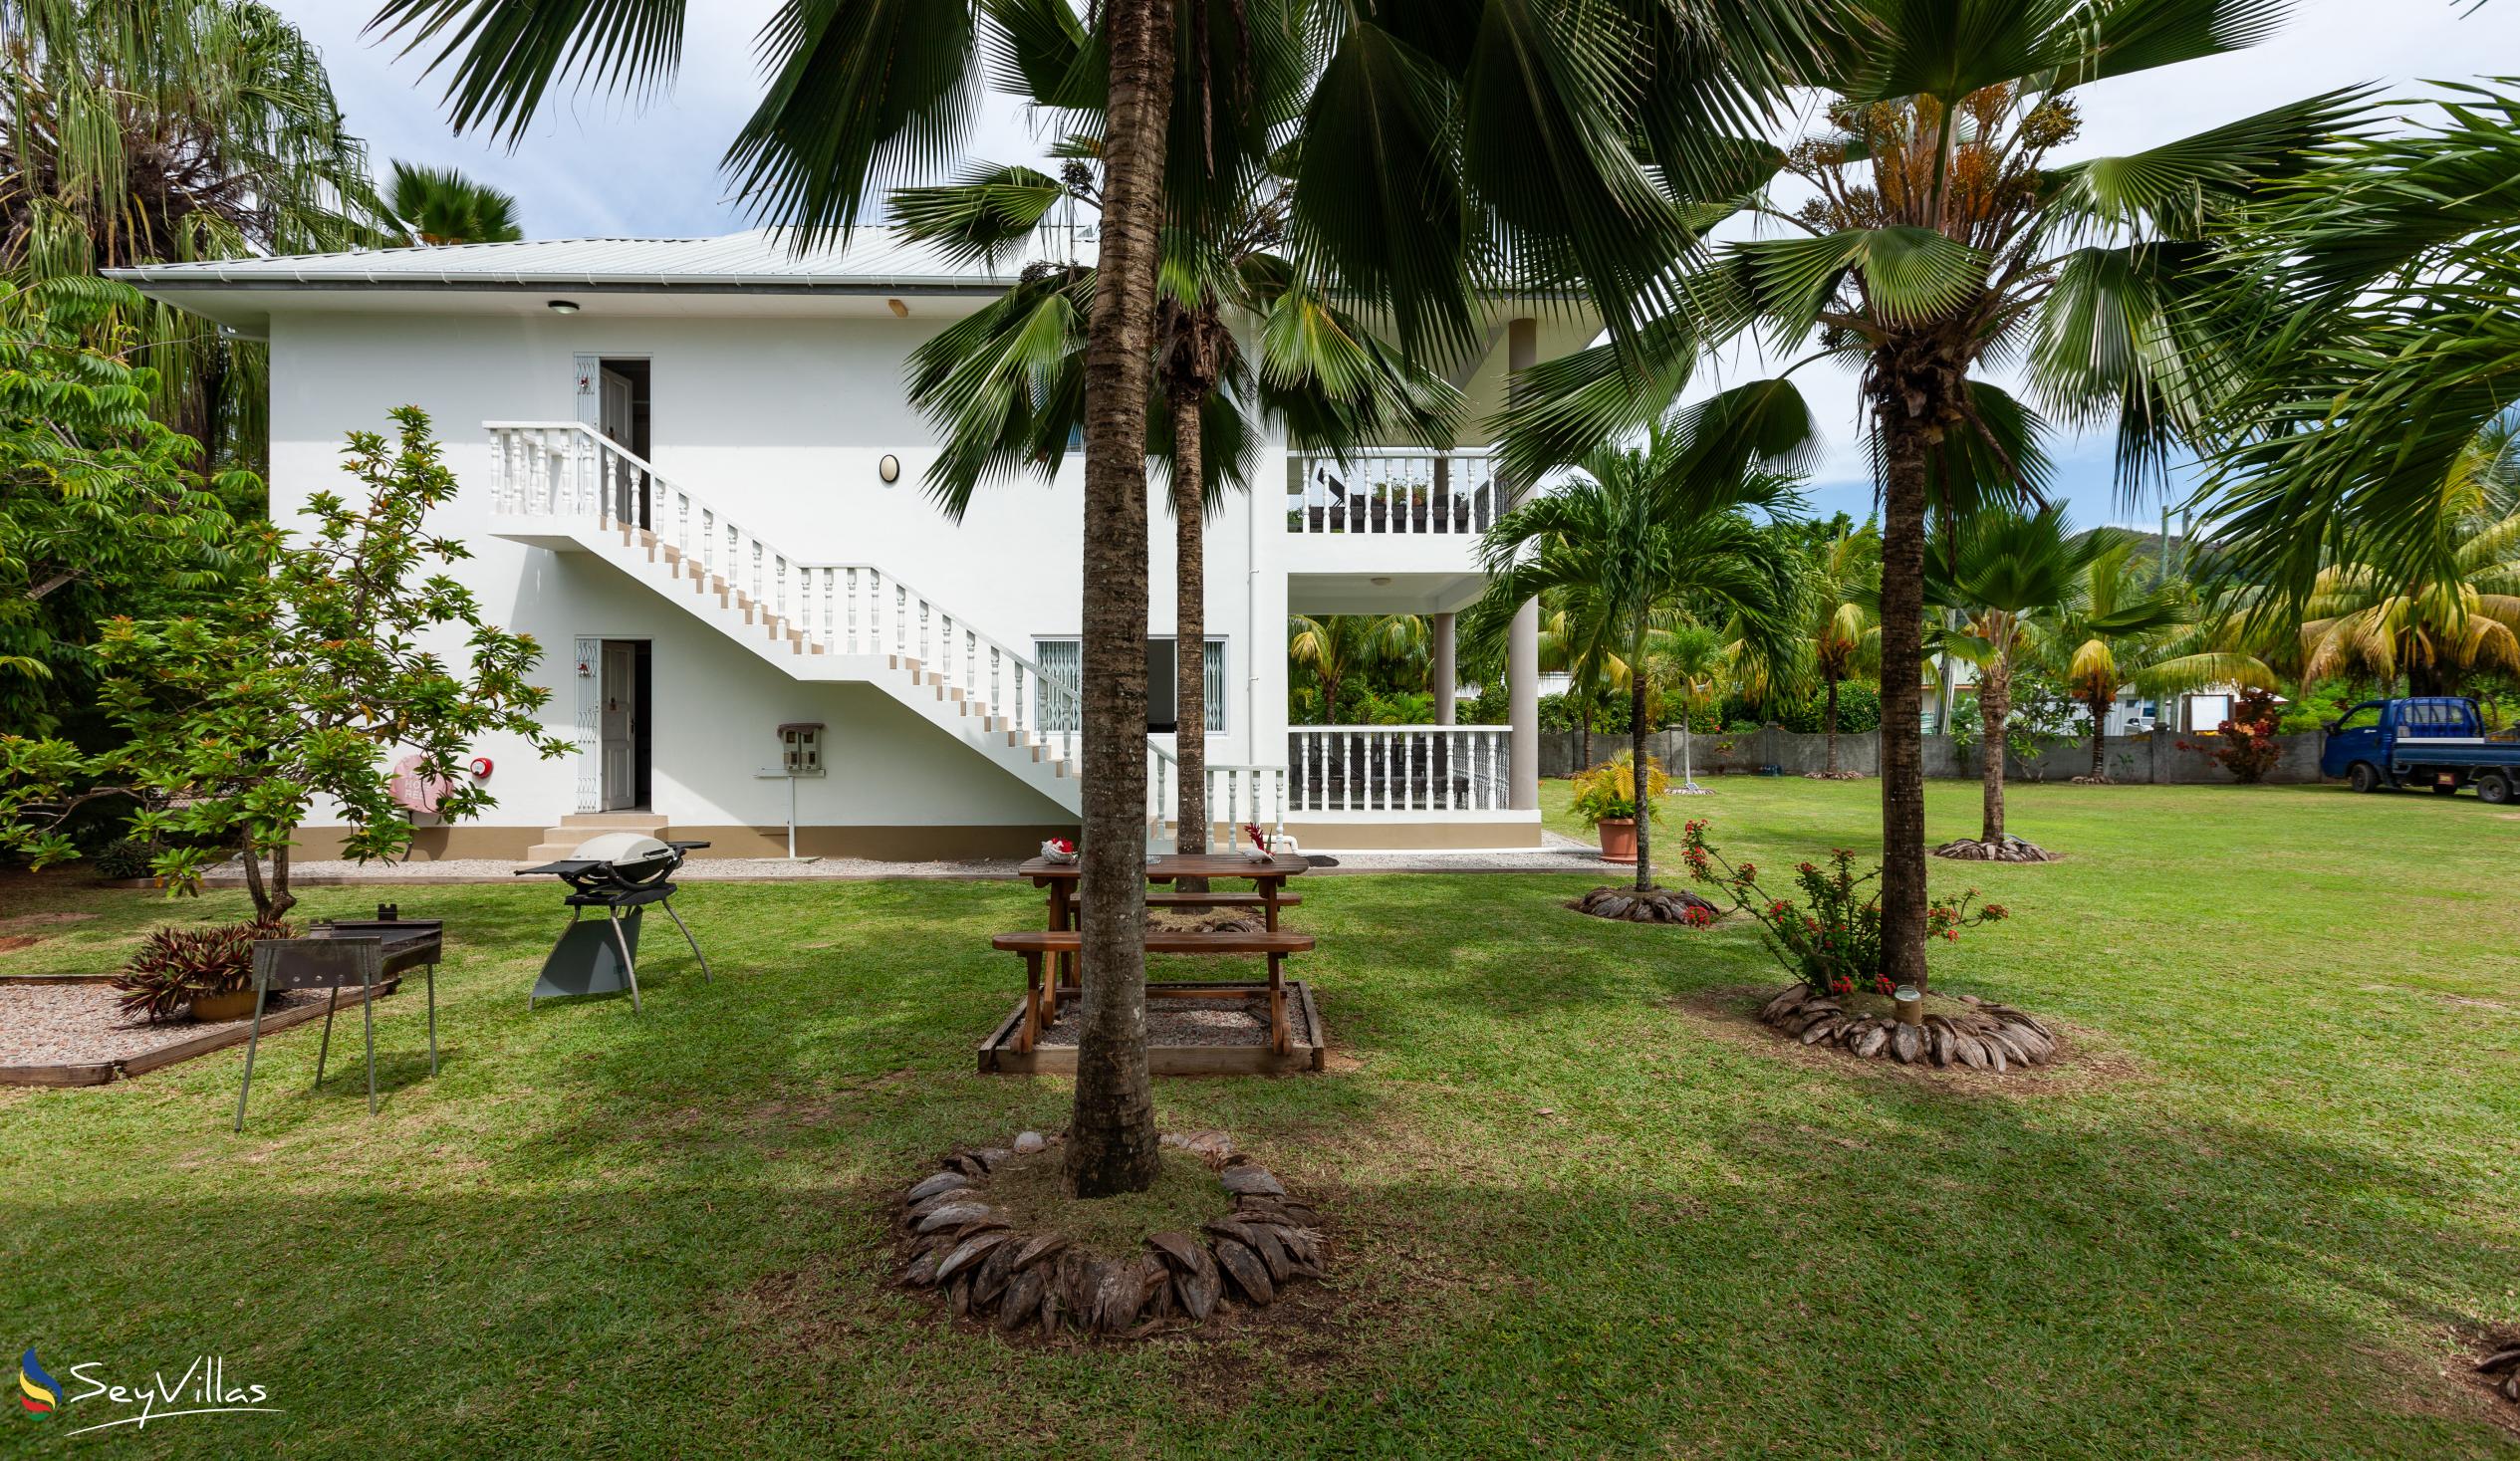 Foto 11: Casa Tara Villas - Aussenbereich - Praslin (Seychellen)